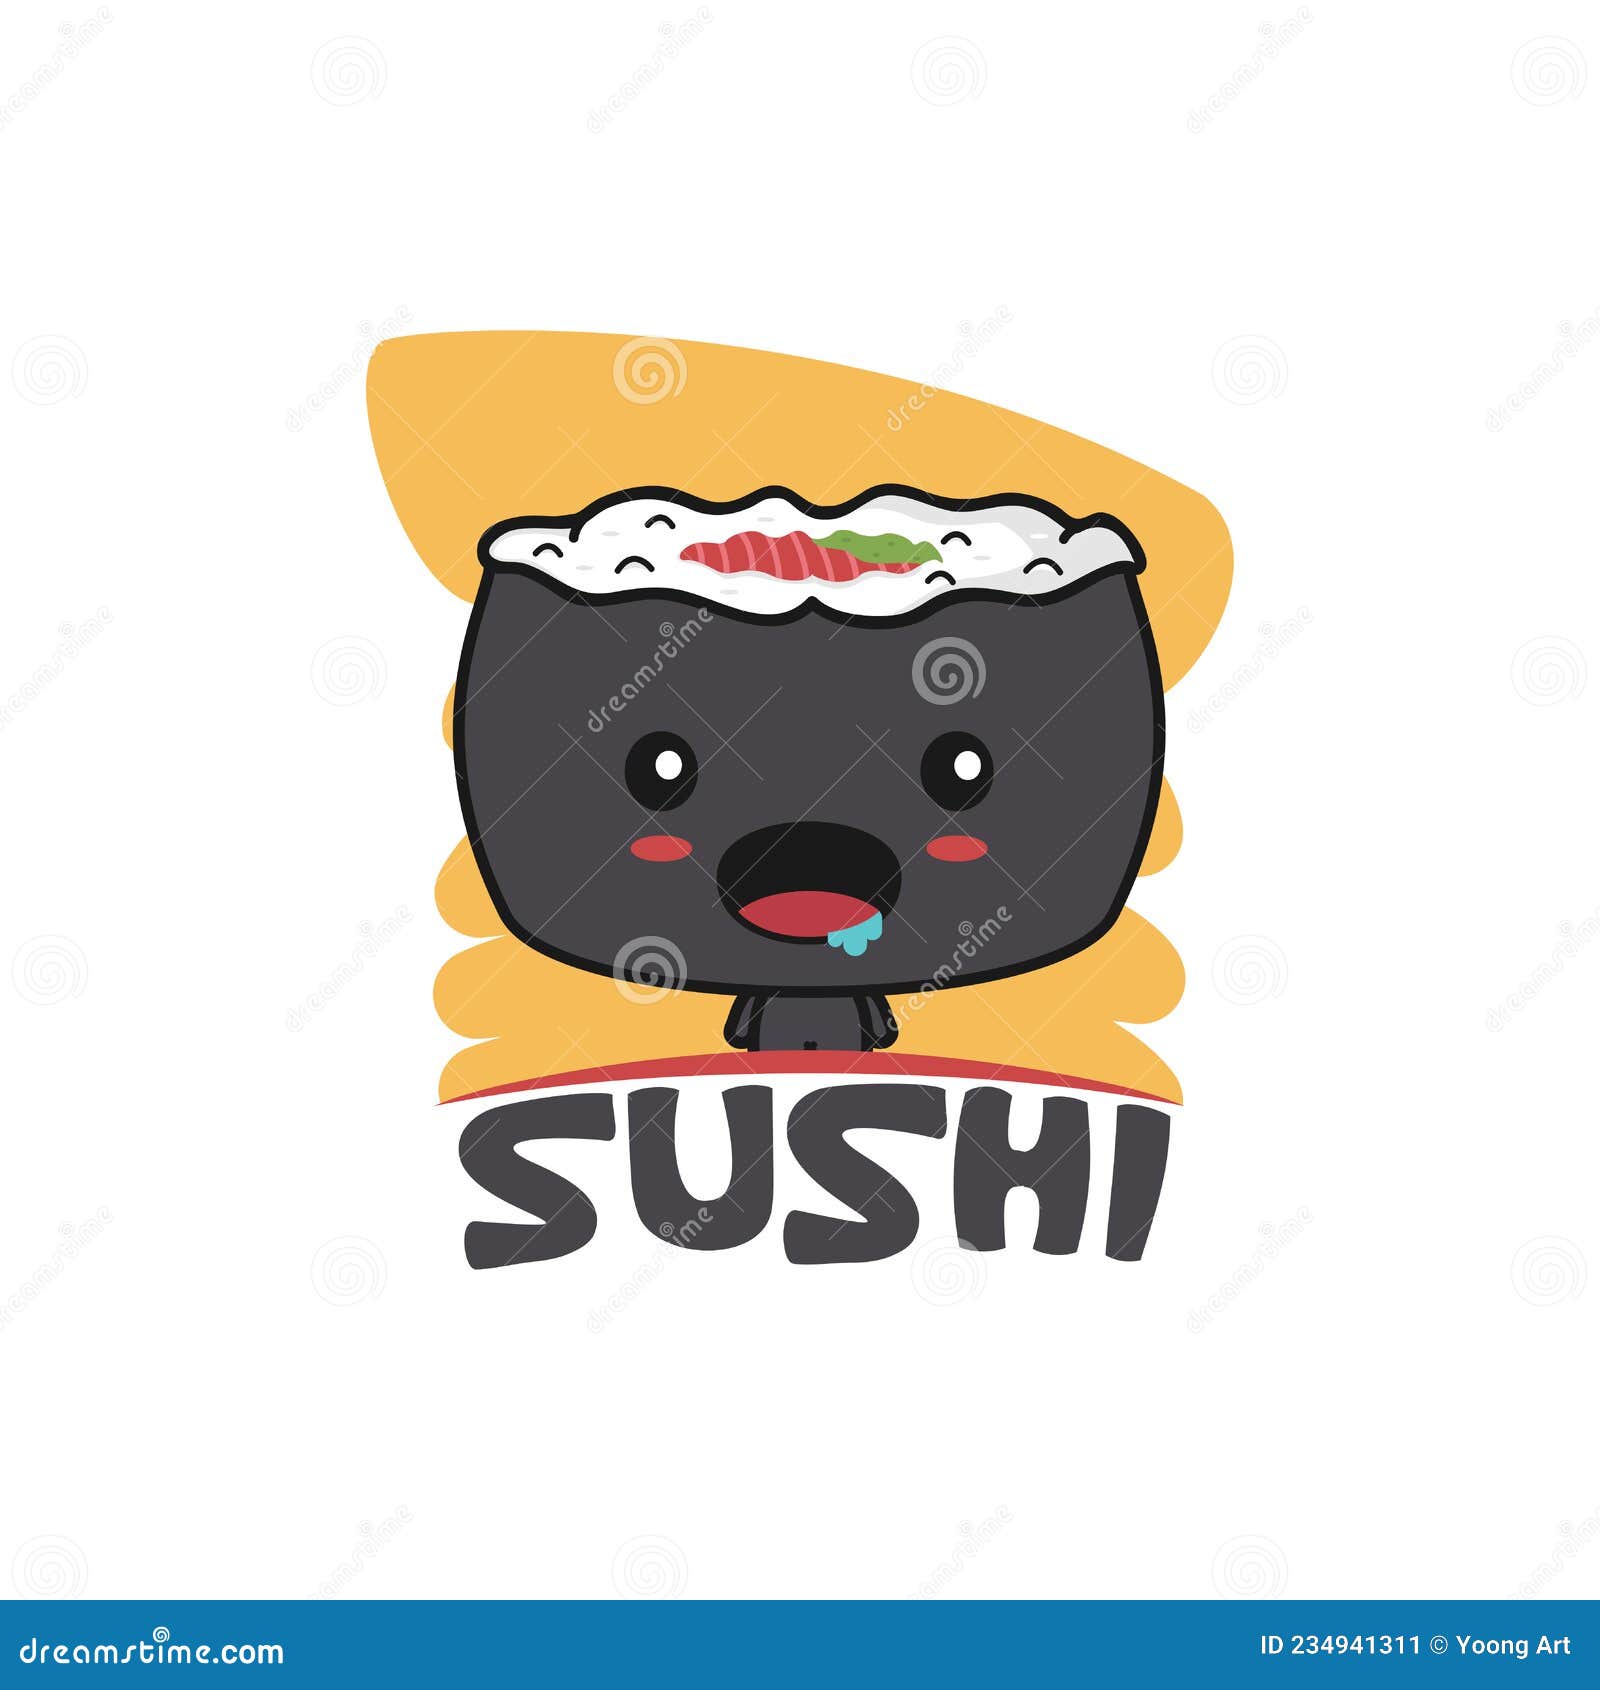 personagem de rolo de sushi fofo e kawaii. personagem de mascote